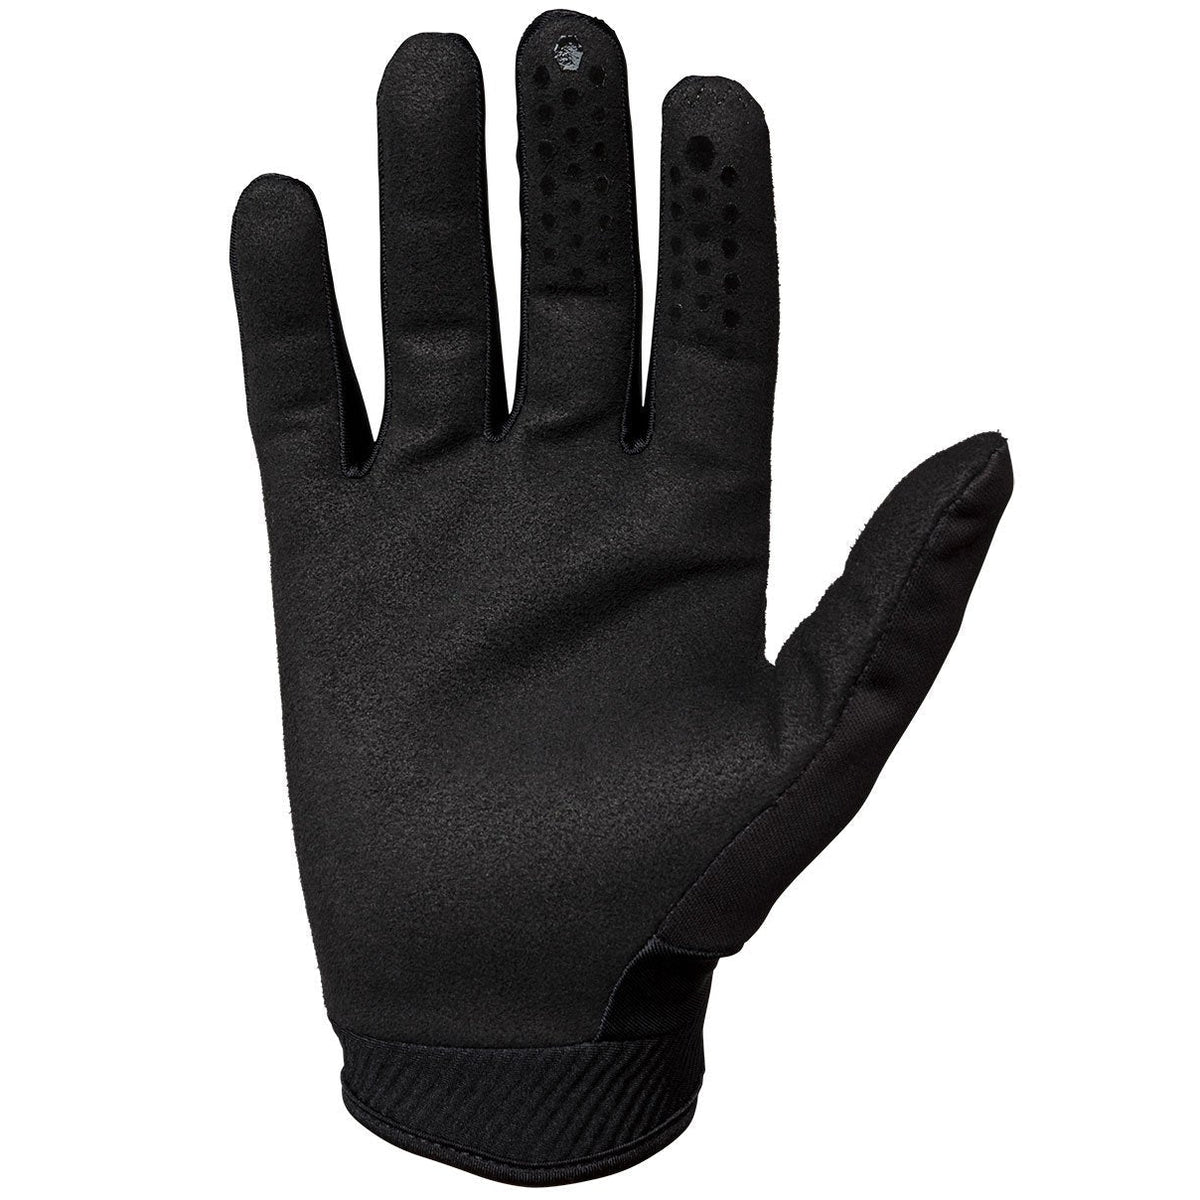 Seven Zero Cold Weather Glove